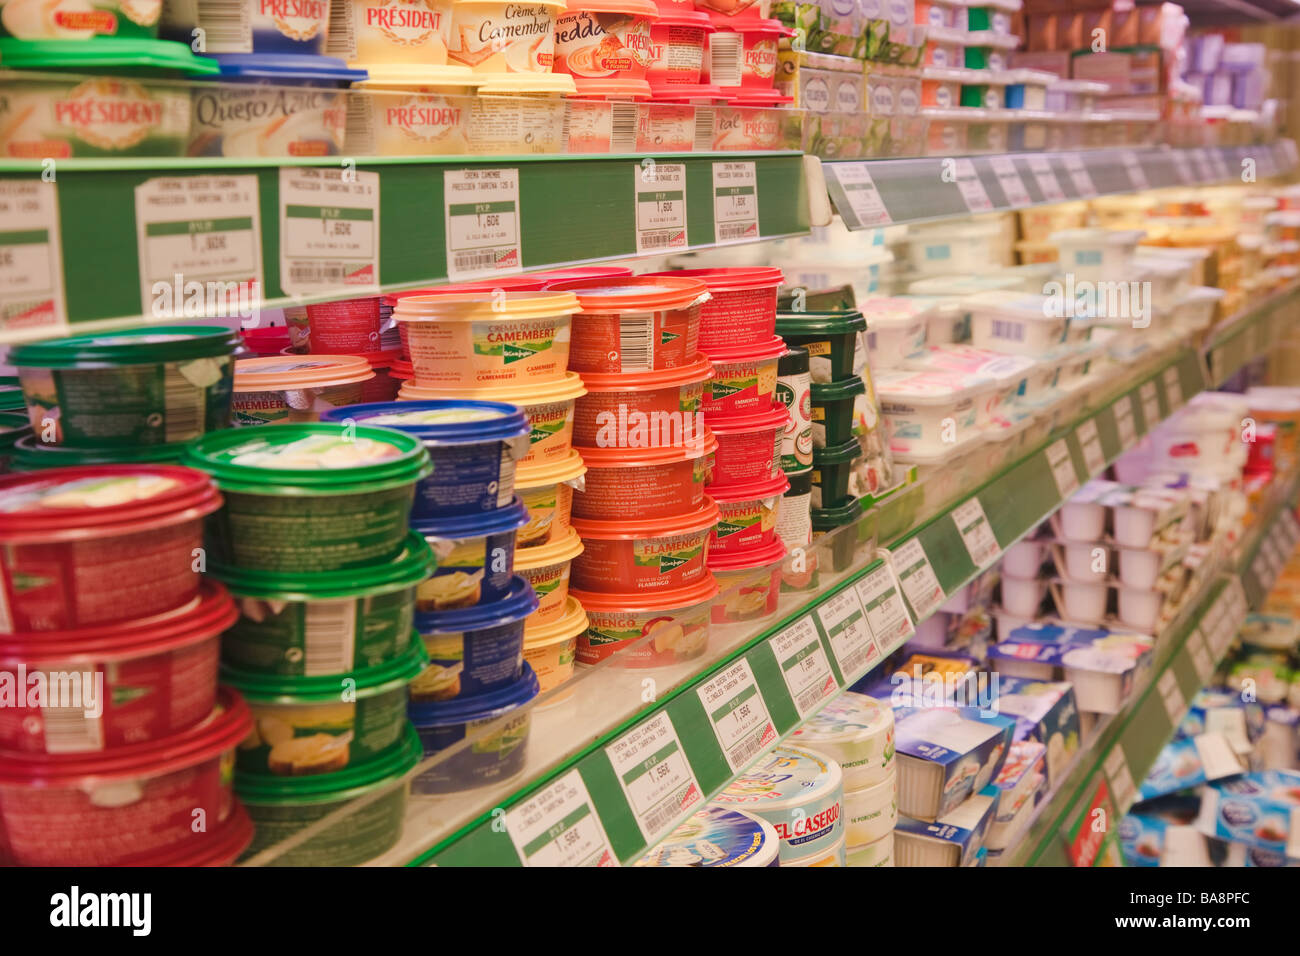 Productos lácteos en un supermercado SuperCor outlet de El Corte Ingles España Foto de stock